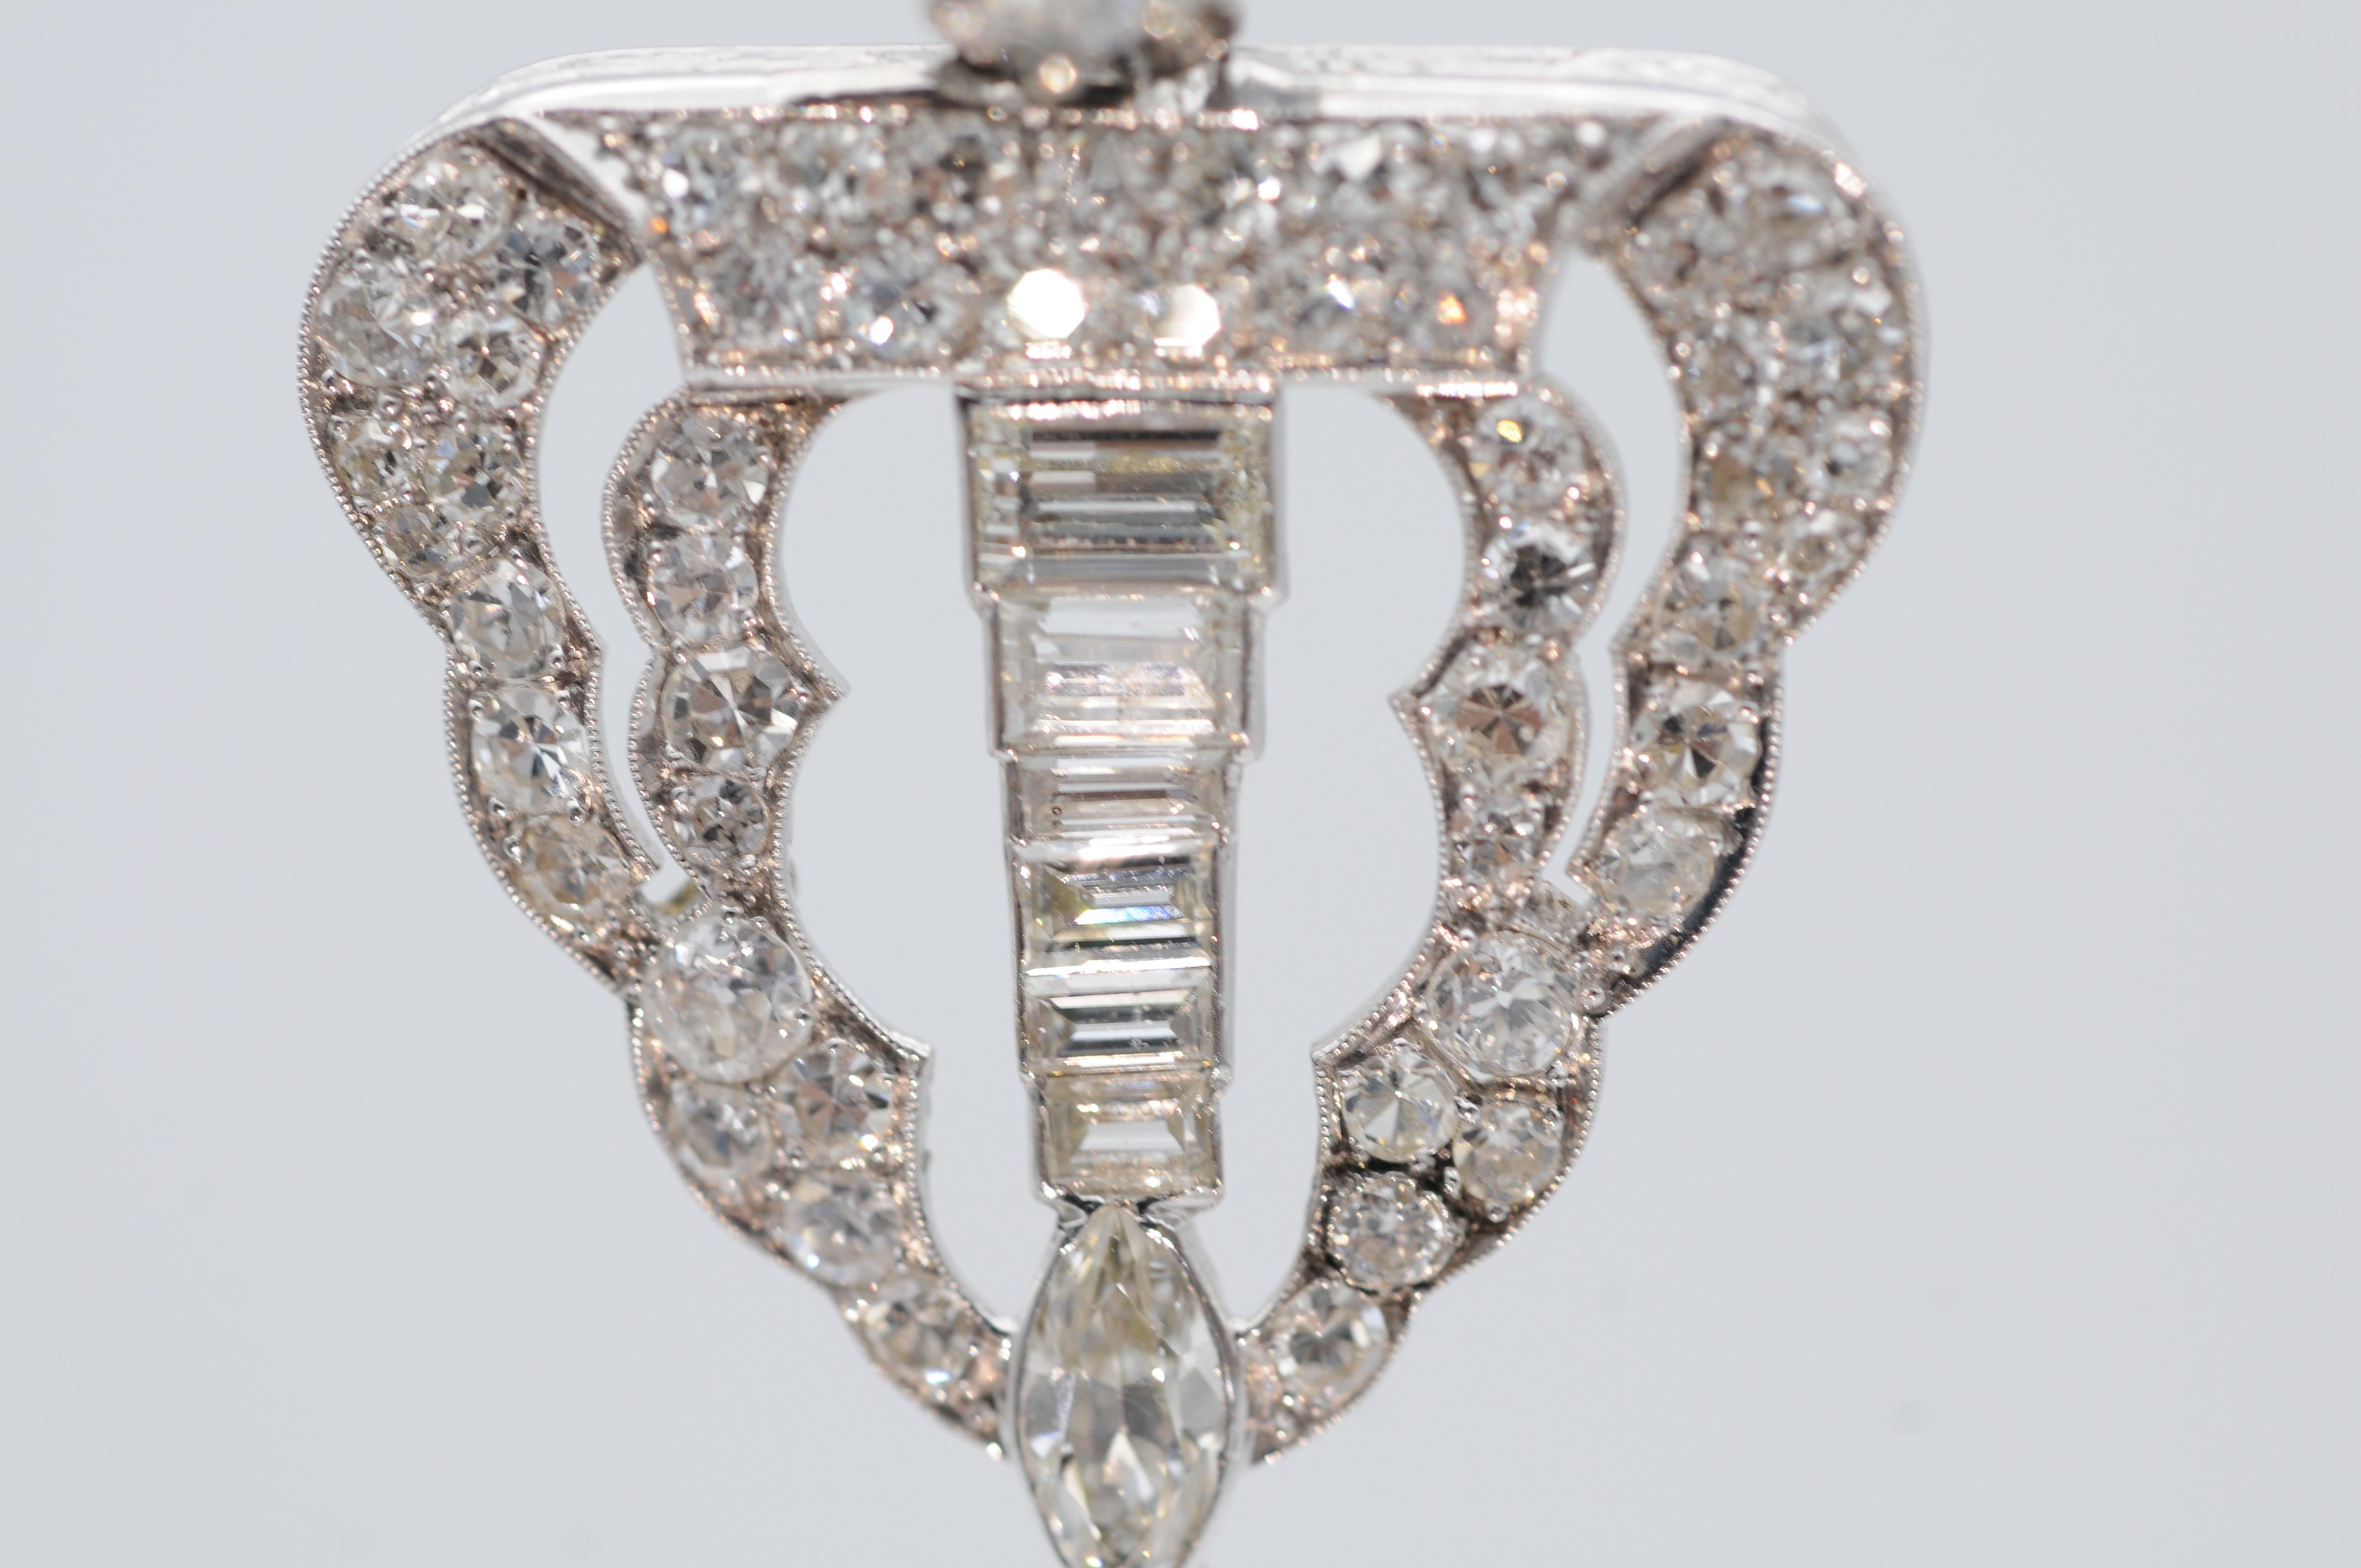 Entrez dans un monde d'opulence et de luxe avec ce magnifique collier de diamants, réalisé avec expertise en or blanc 18k. Le collier présente une forme de diamant exquise, entièrement sertie d'un éventail éblouissant de diamants de différentes